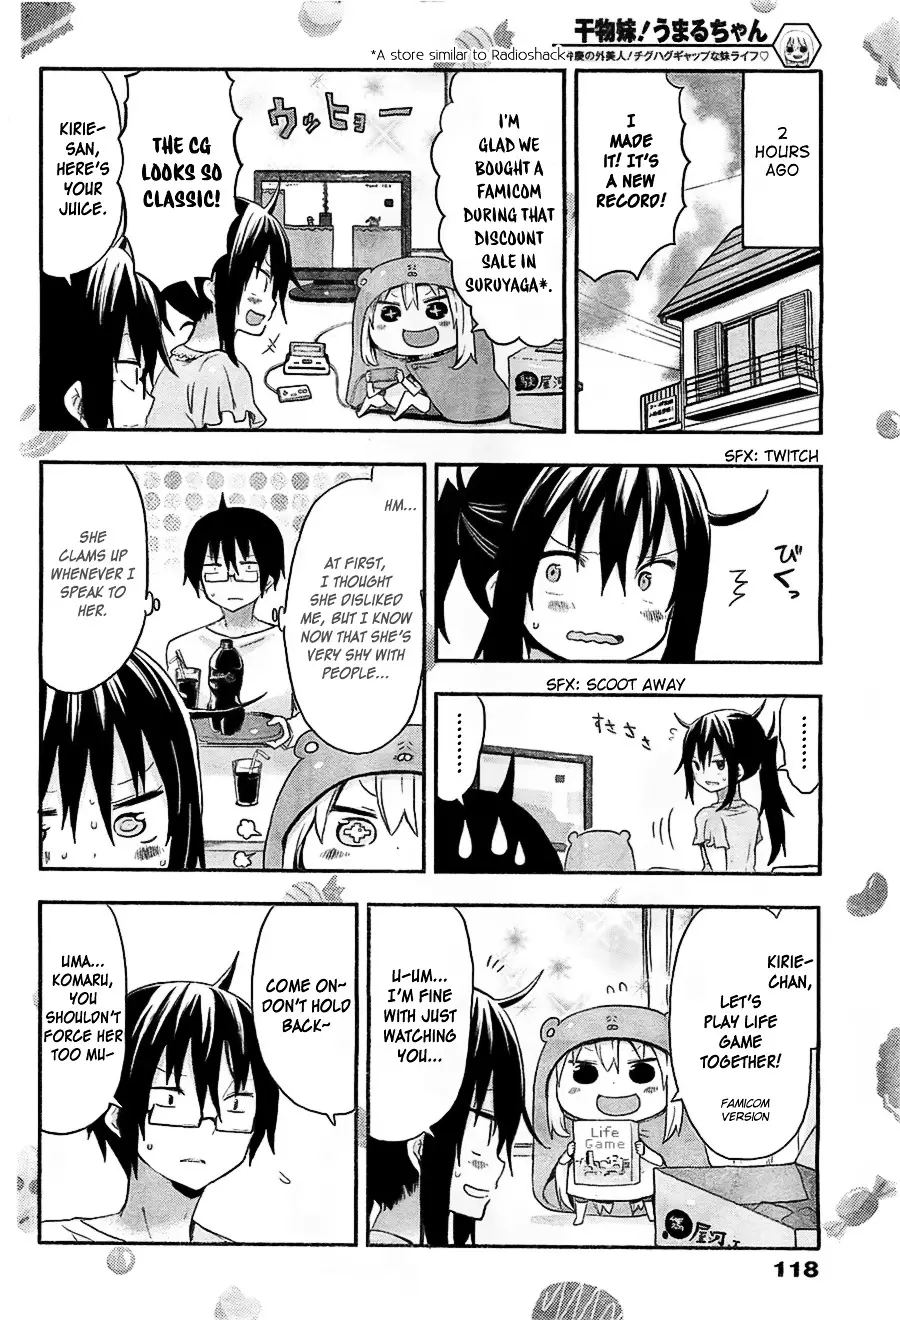 Himouto! Umaru-Chan - 28 page 2